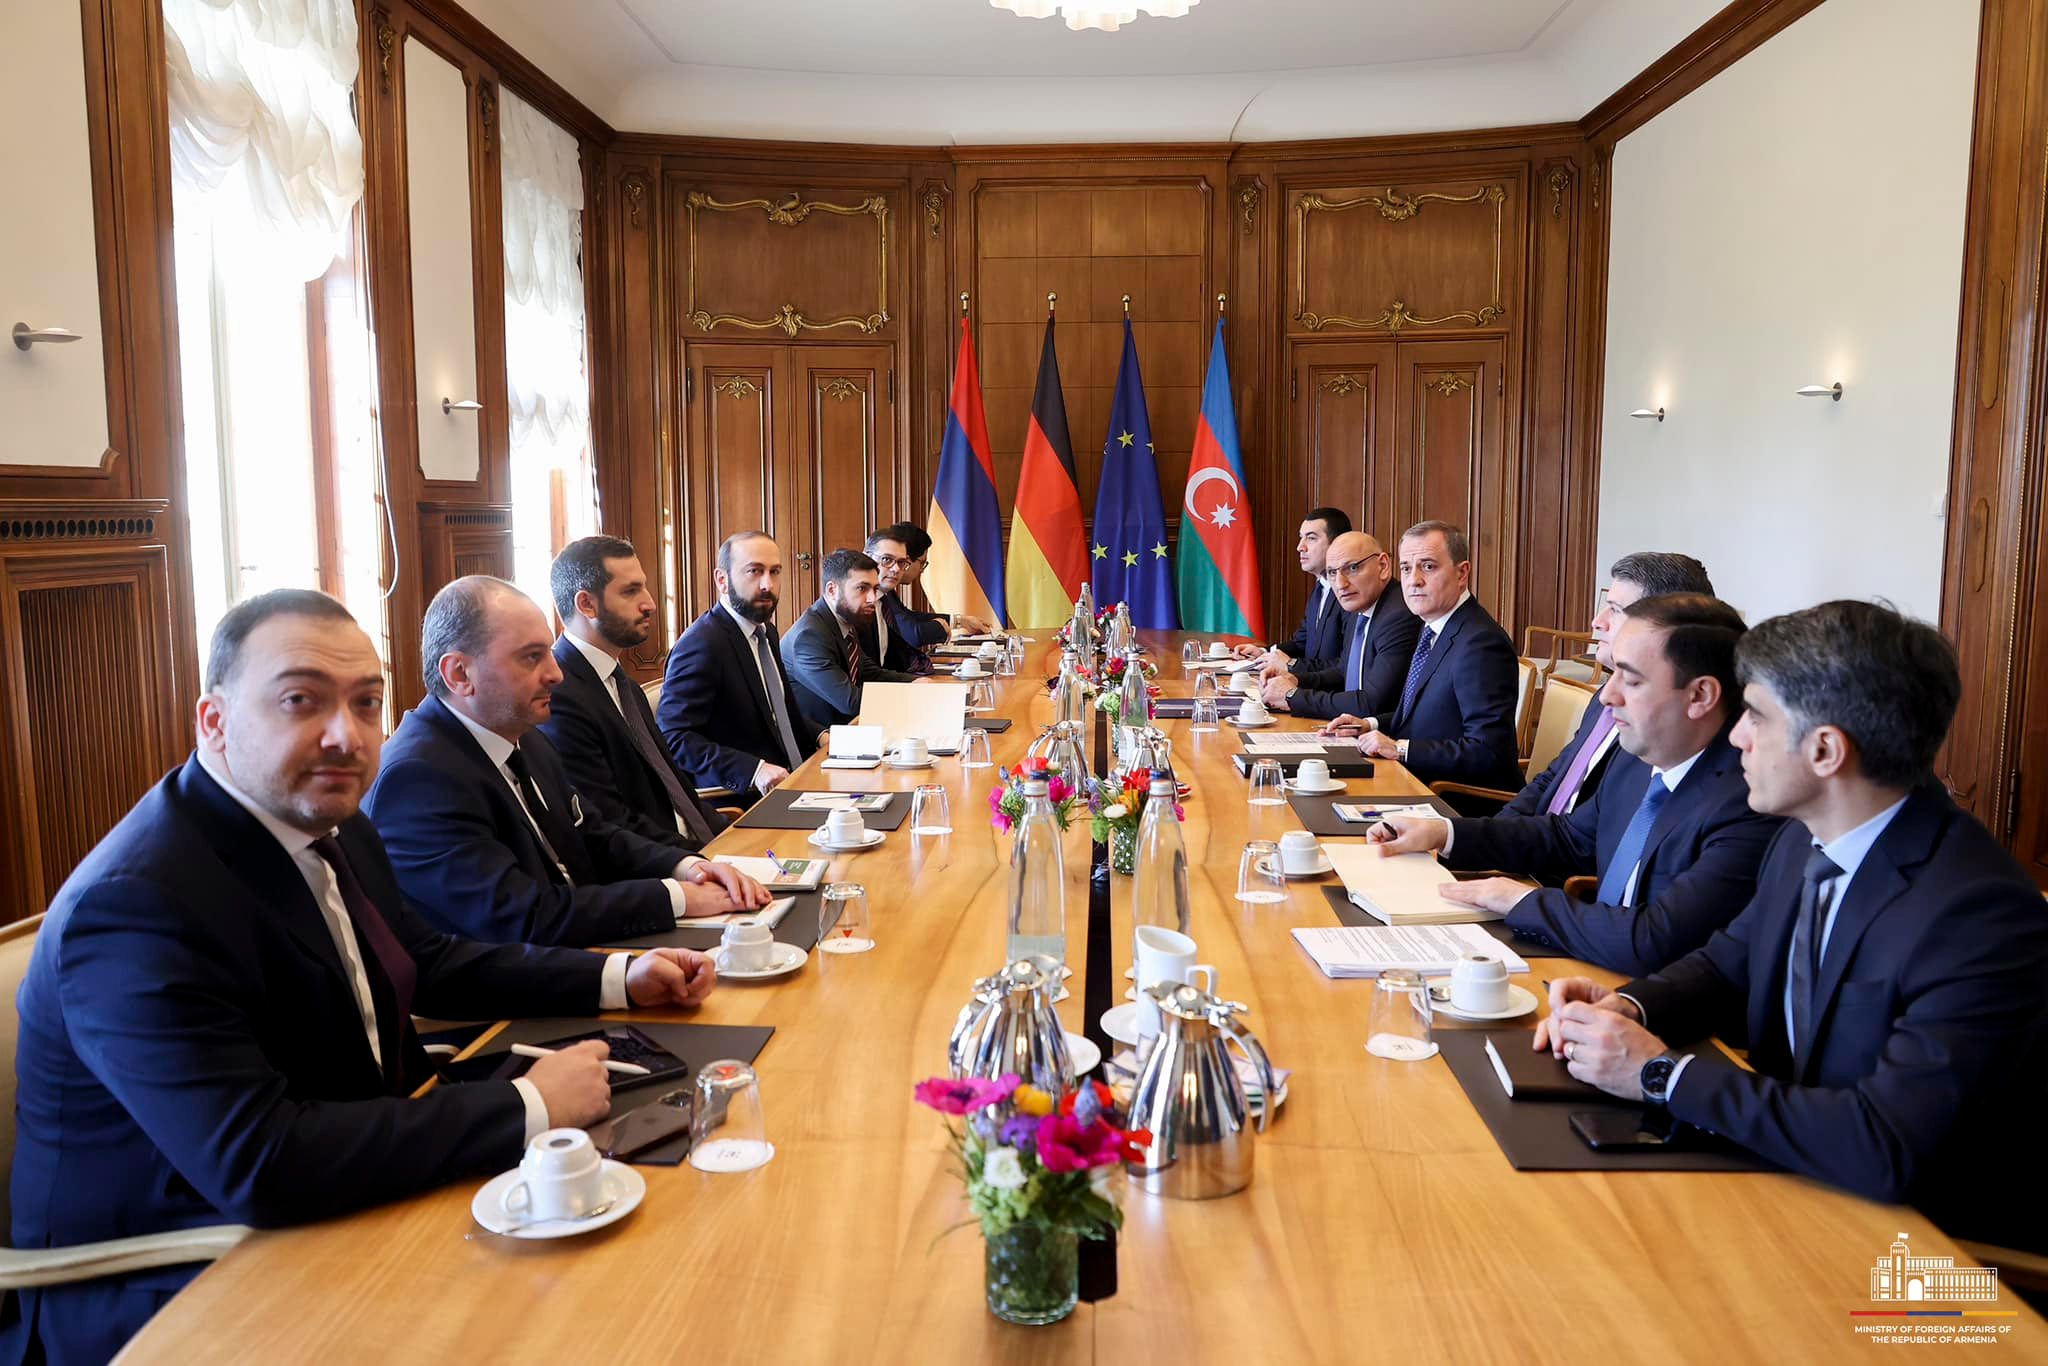 Շարունակվում են քննարկումները Հայաստան-Ադրբեջան հարաբերությունների կարգավորման գործընթացի հարցերի շուրջ